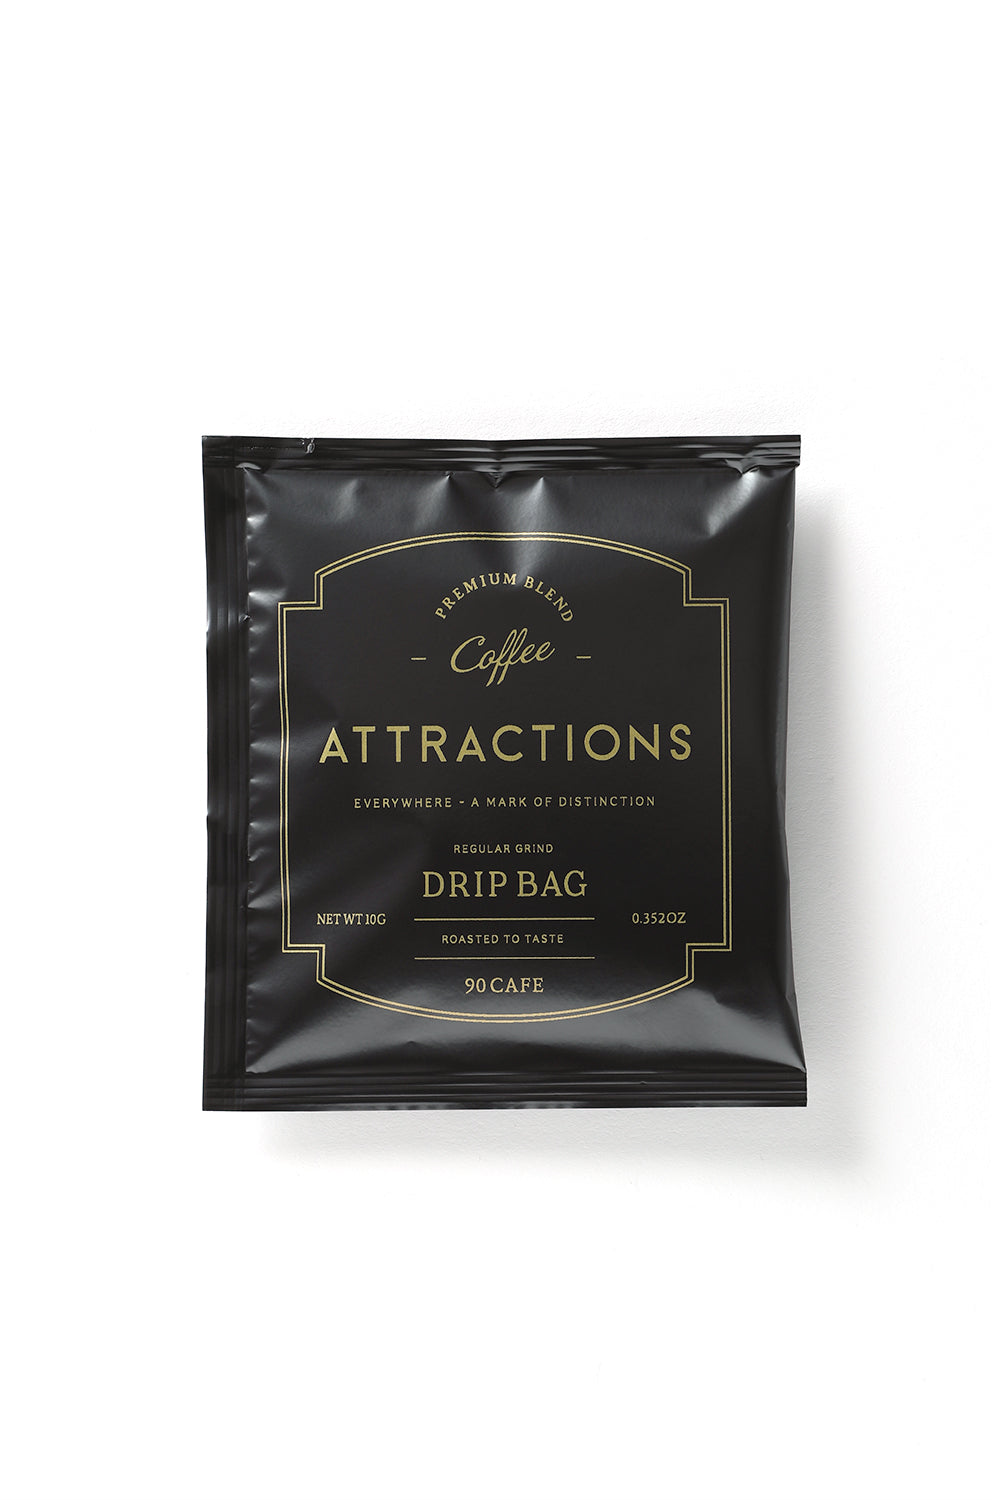 A20027 Drip Bag - Premium Blend Coffee